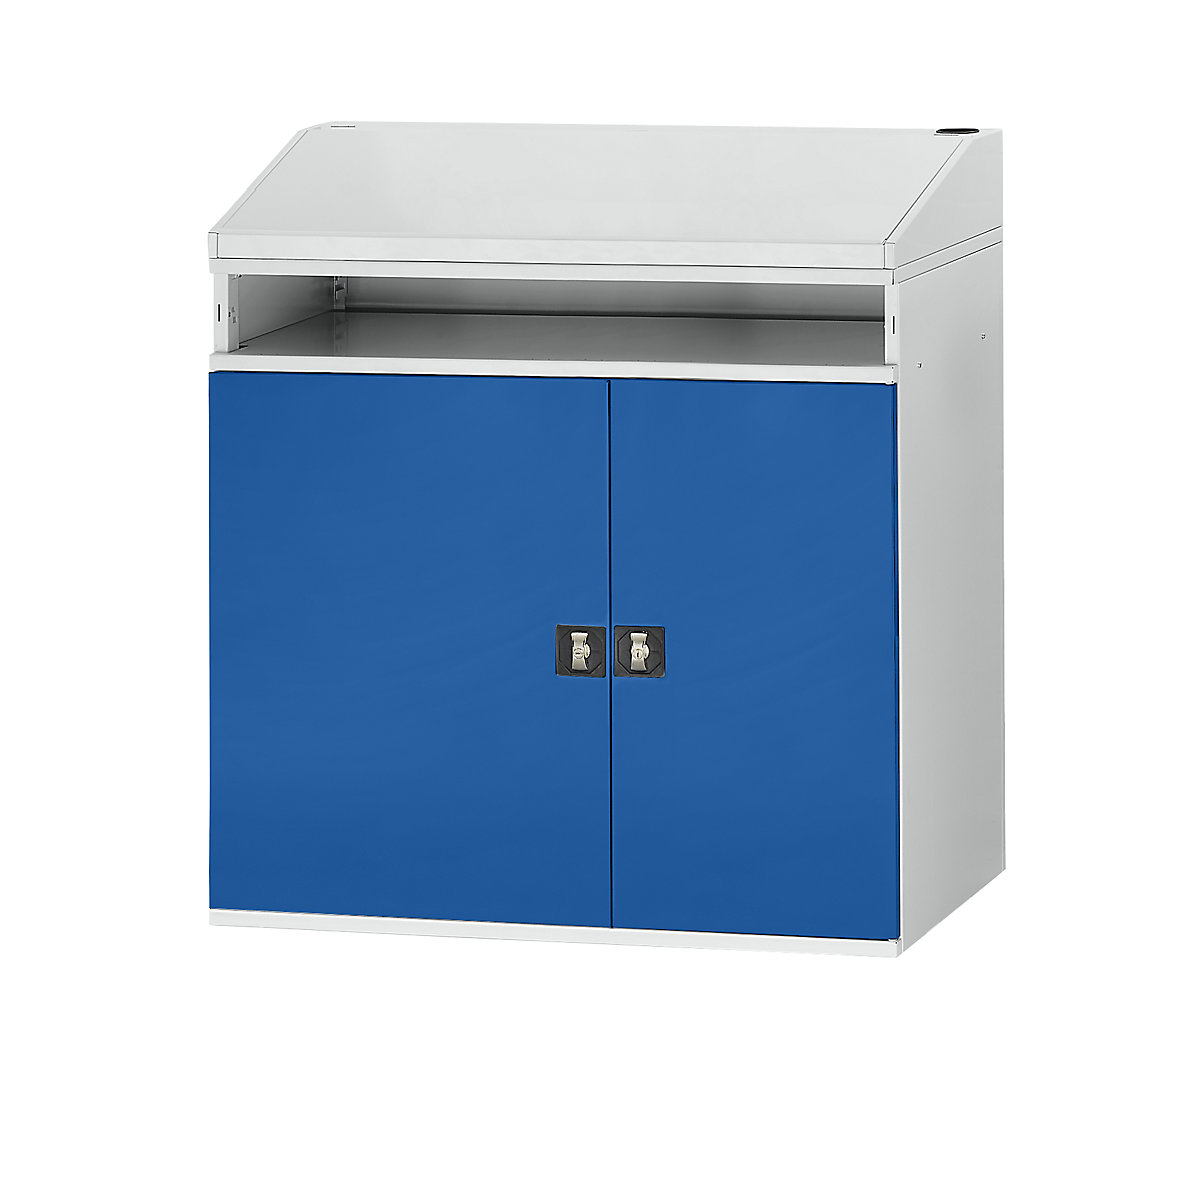 Pupitre industriel – RAU, avec compartiment ouvert au-dessus de l'armoire, largeur 1100 mm, gris clair / bleu gentiane-5